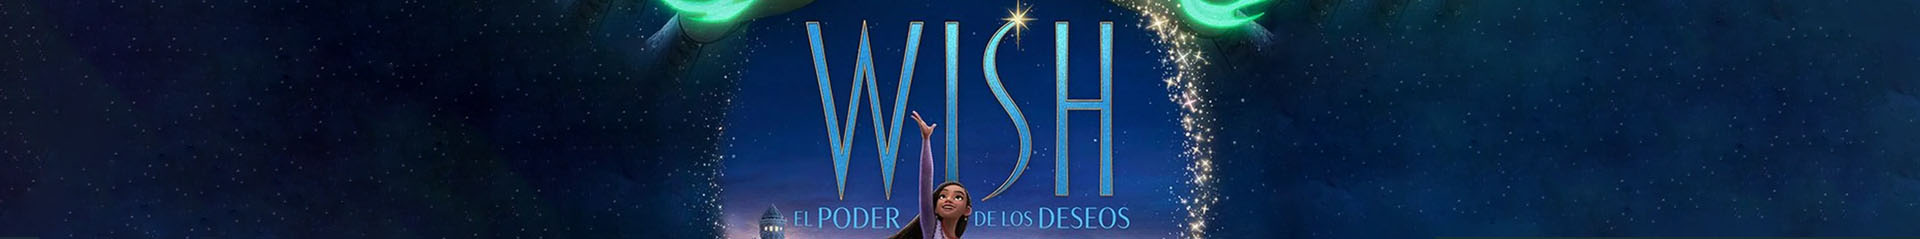 wish2